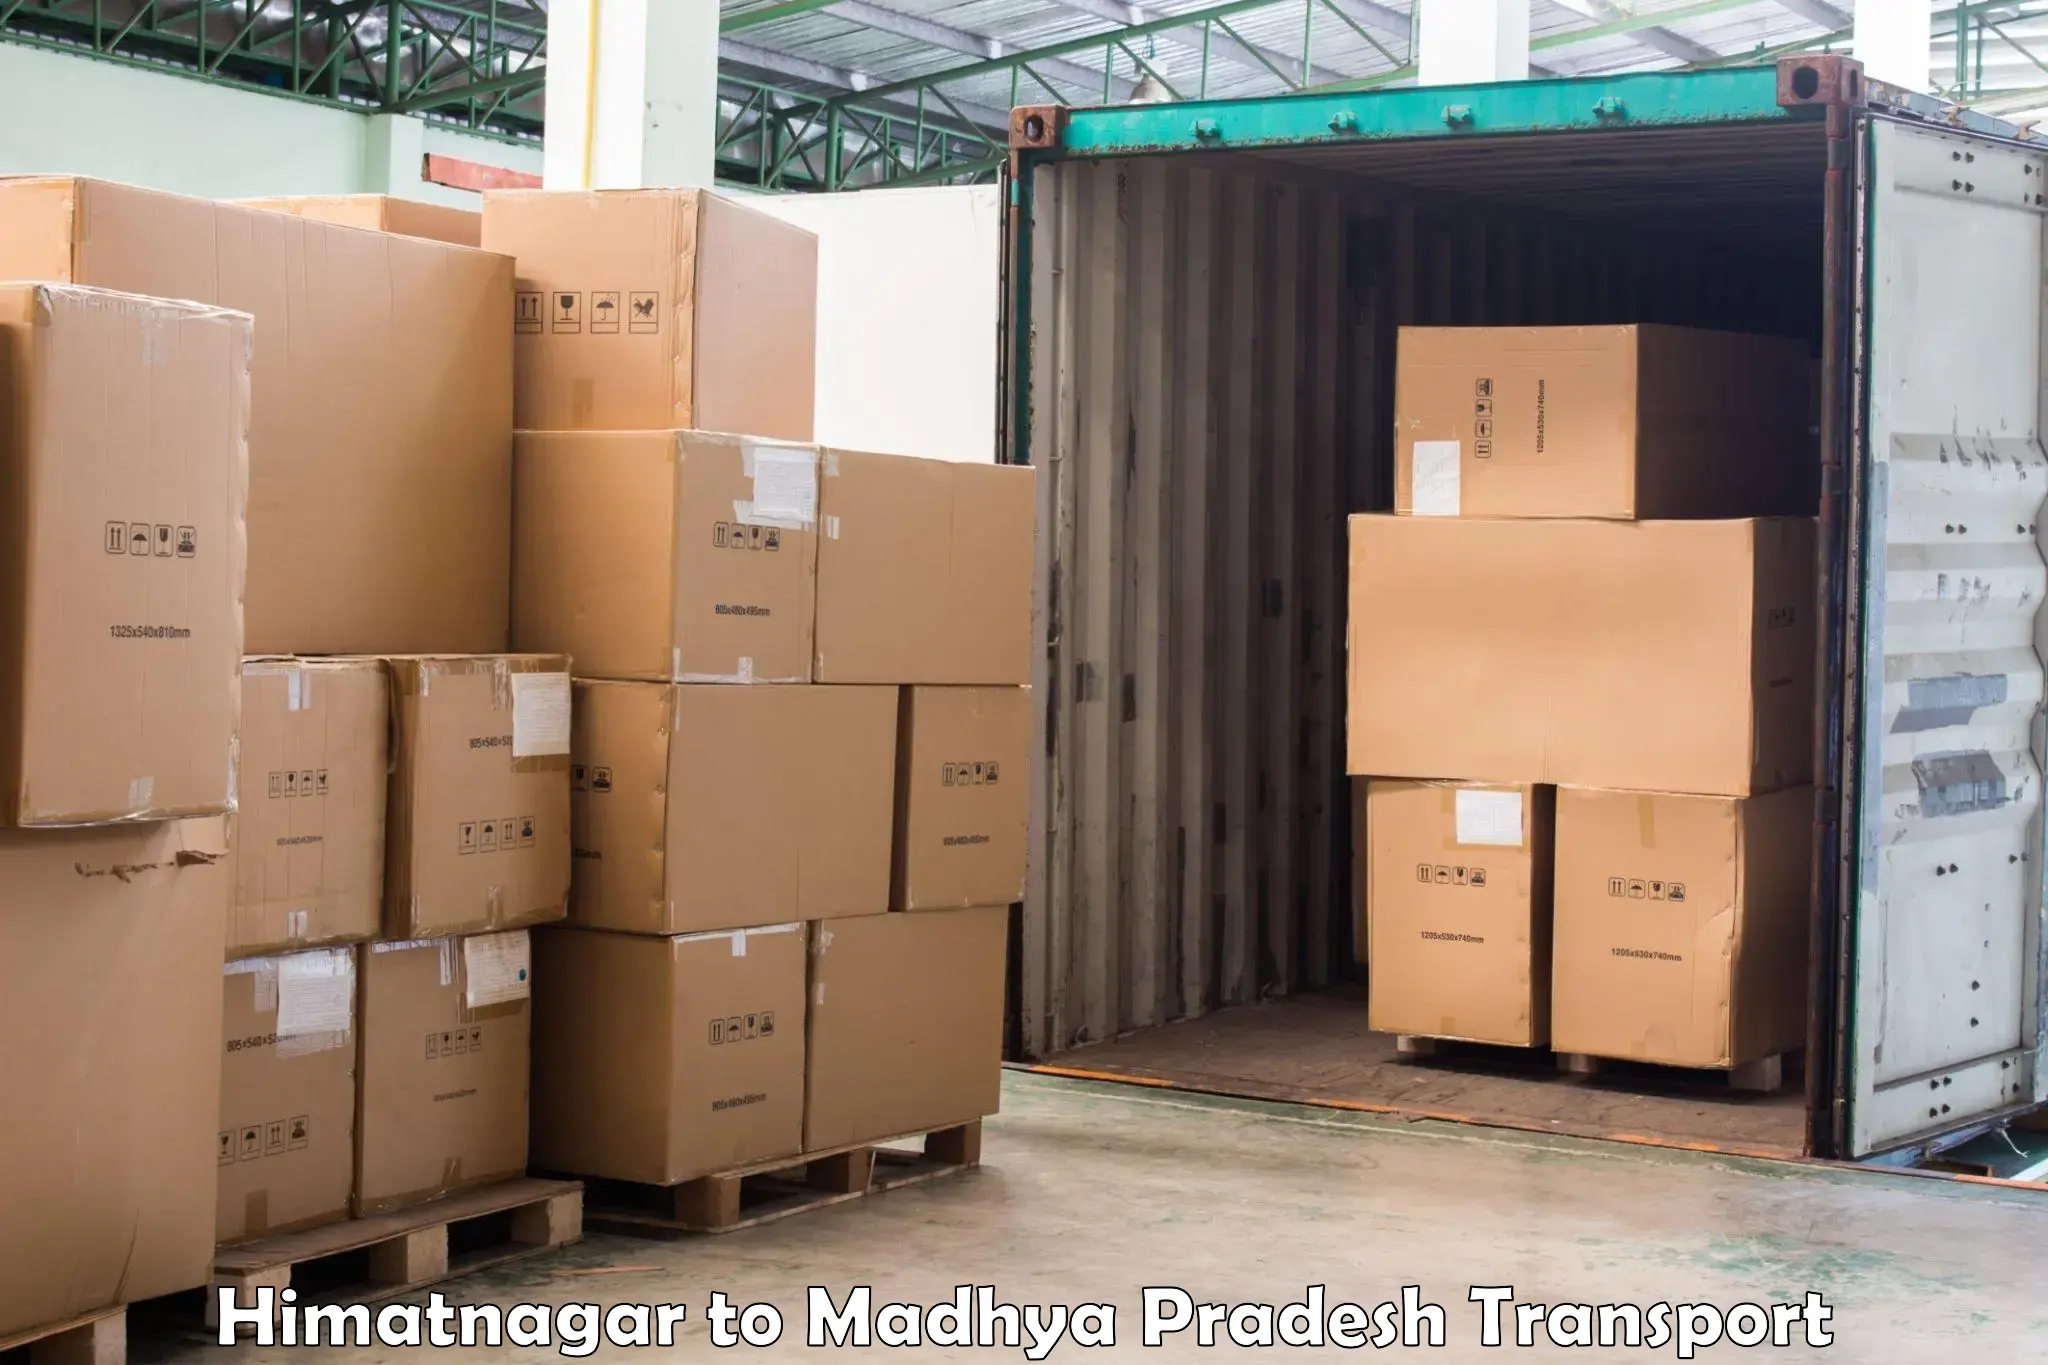 Land transport services Himatnagar to Datia